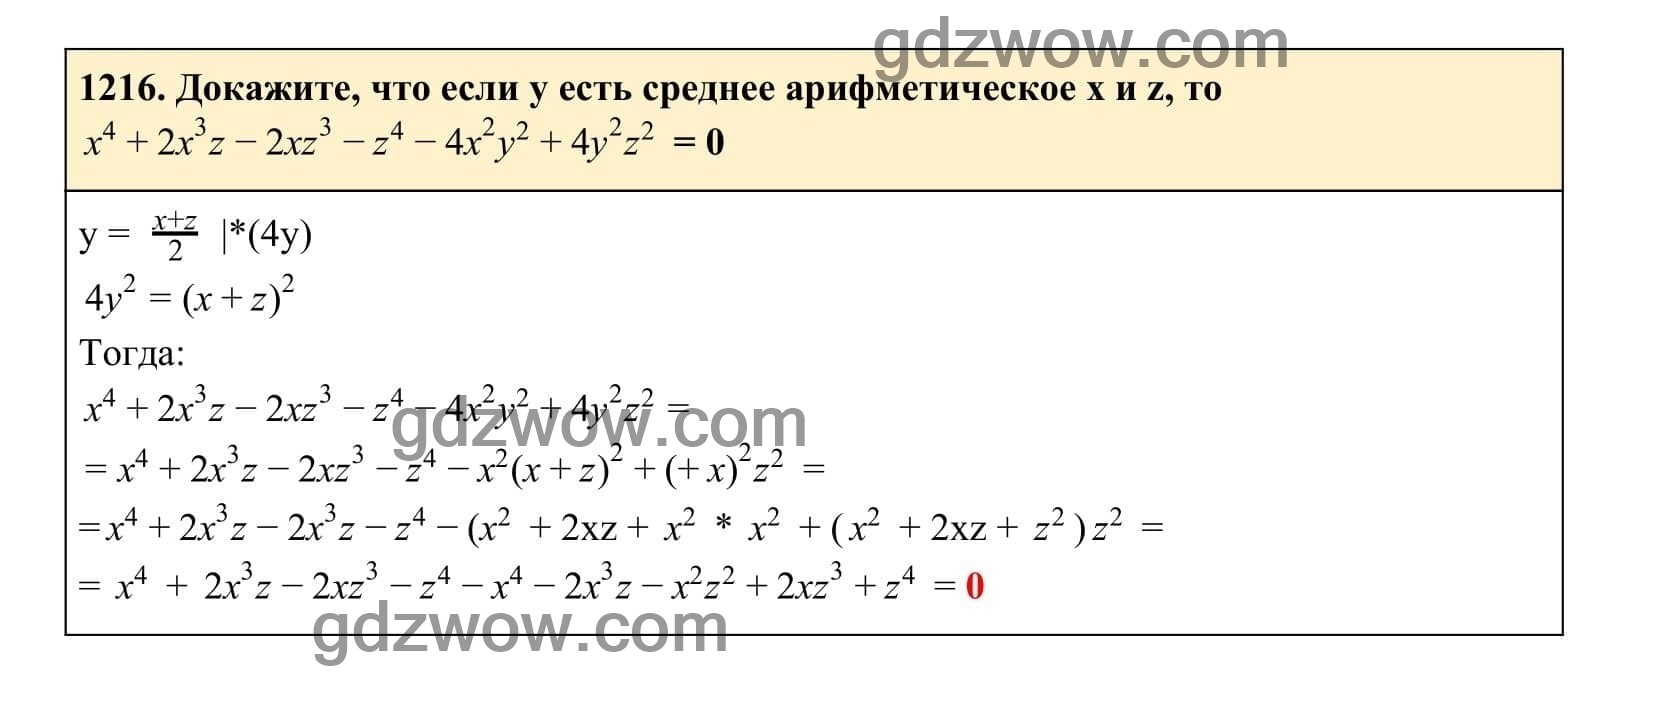 Упражнение 1216 - ГДЗ по Алгебре 7 класс Учебник Макарычев (решебник) - GDZwow